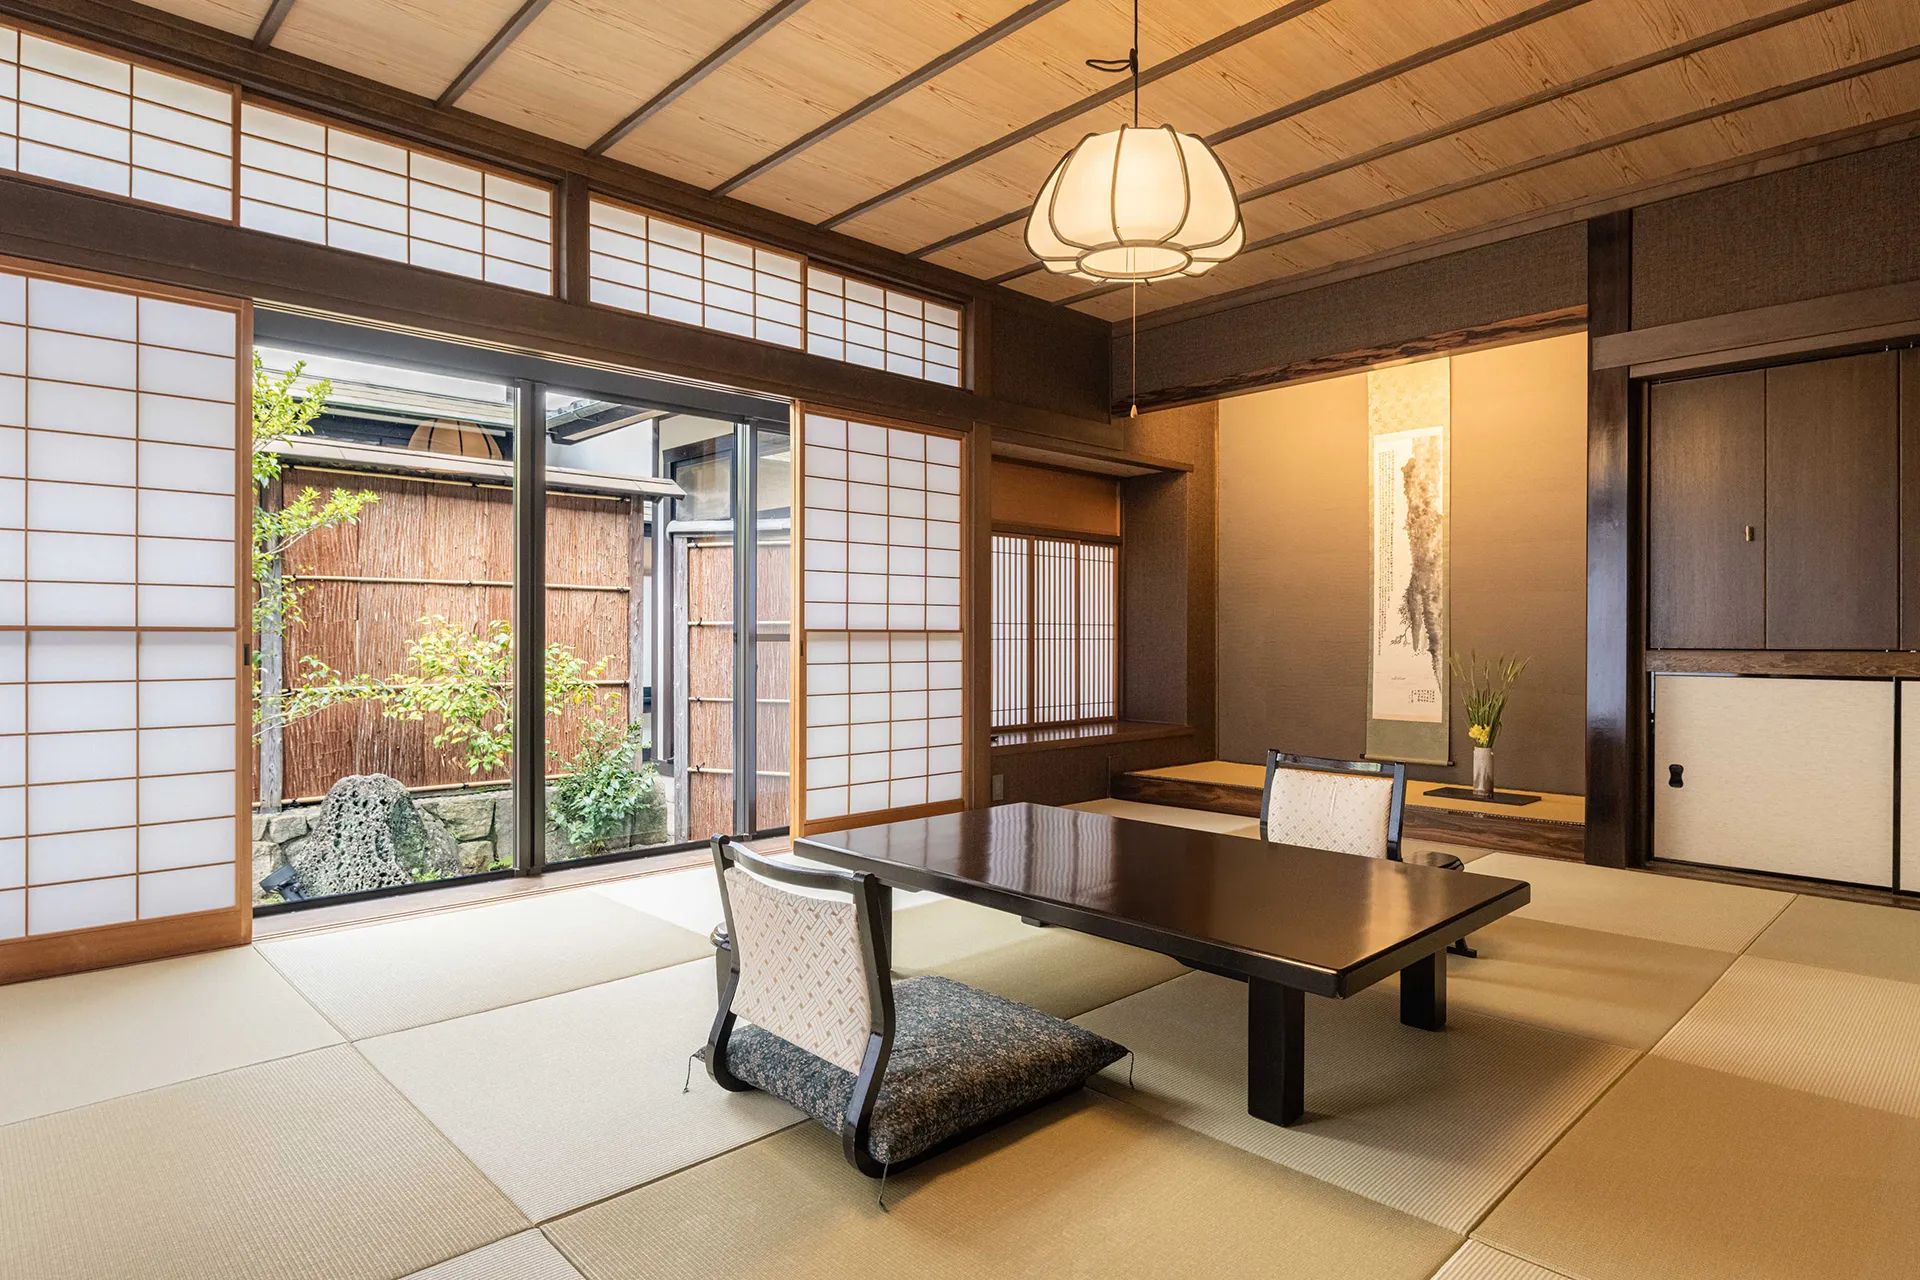 image:日本庭園を臨む座卓の置かれた和室